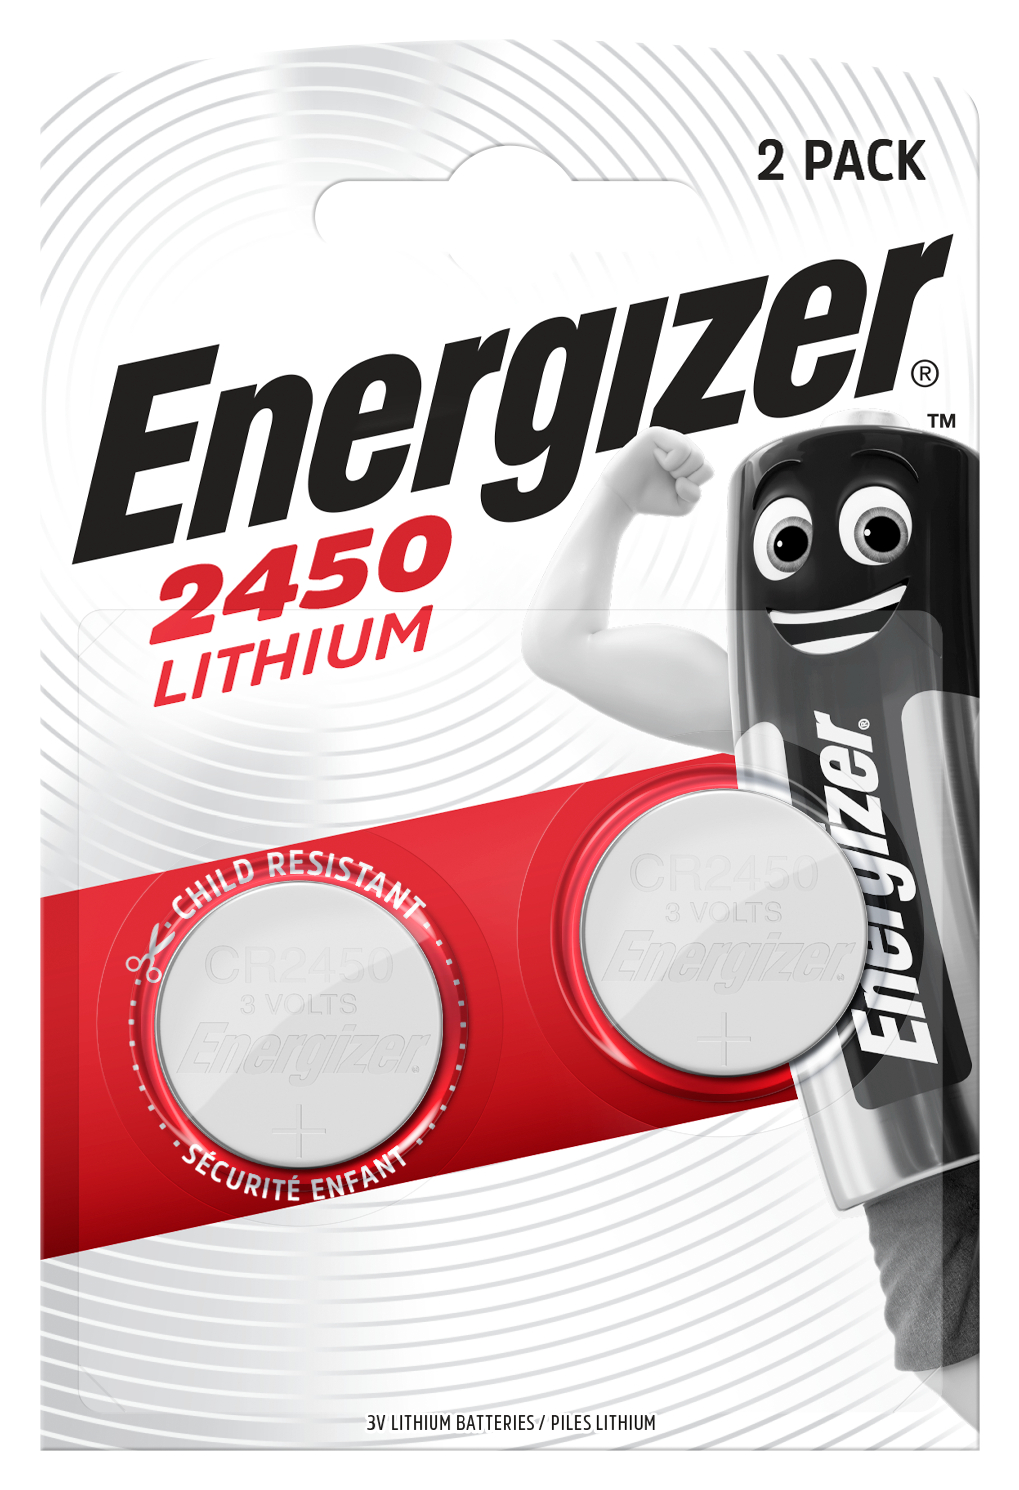 [8558867] Batteri Lithium CR2450 2p